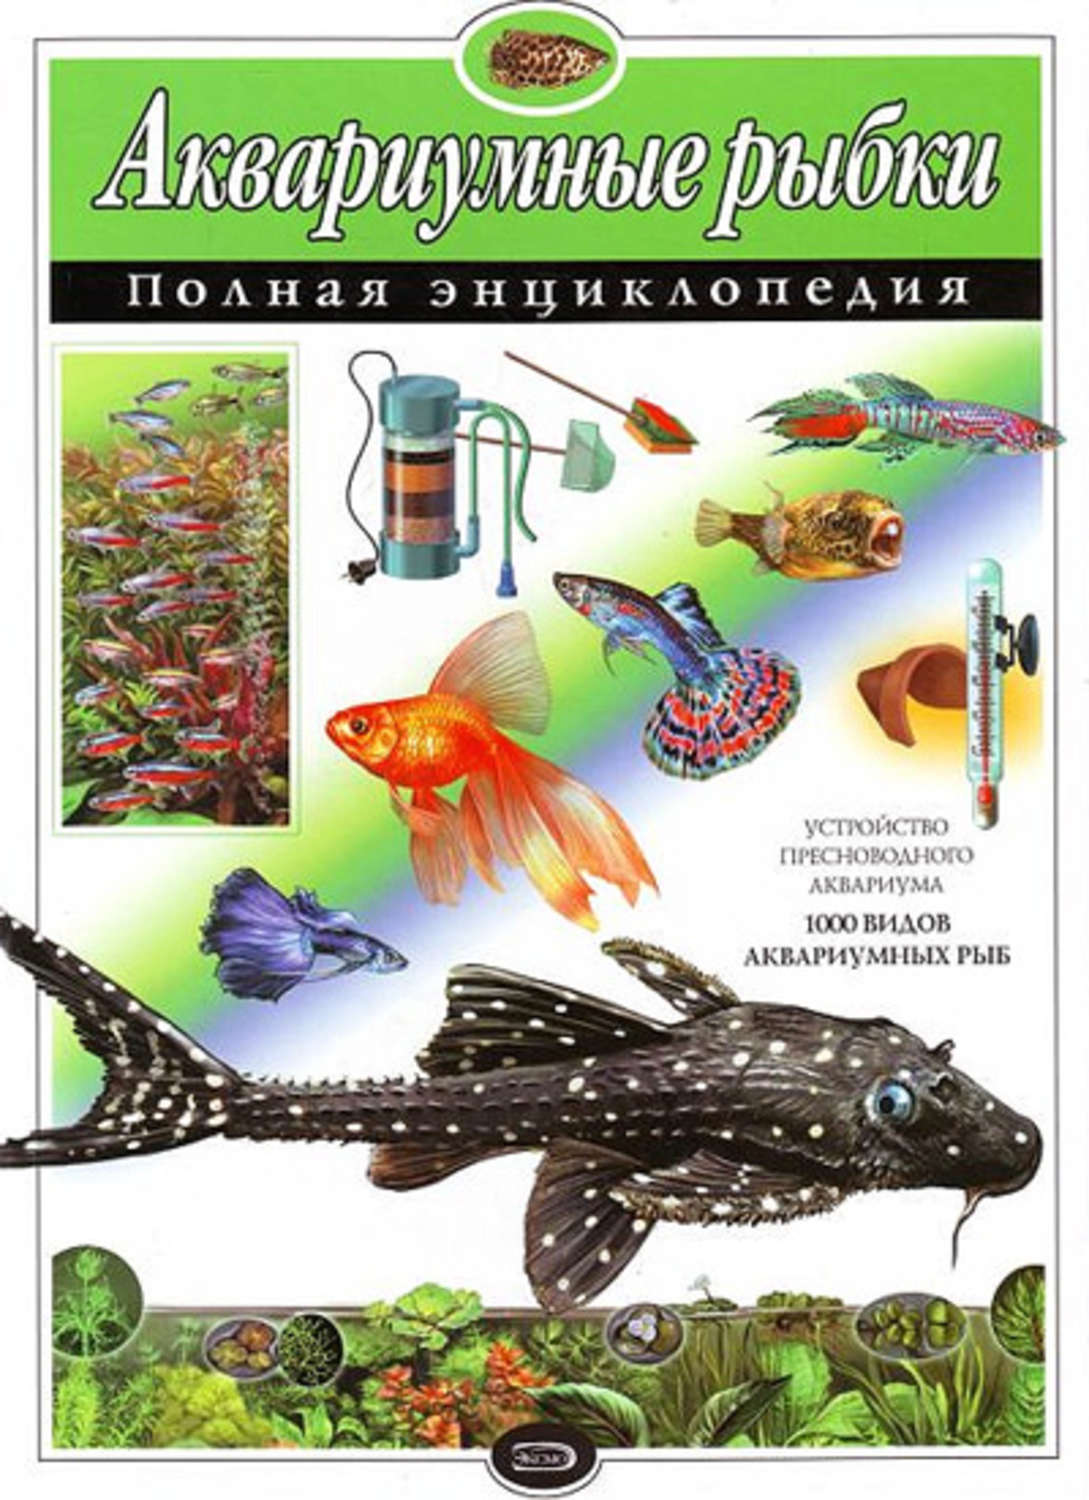 Скачать книгу про аквариумных рыбок pdf